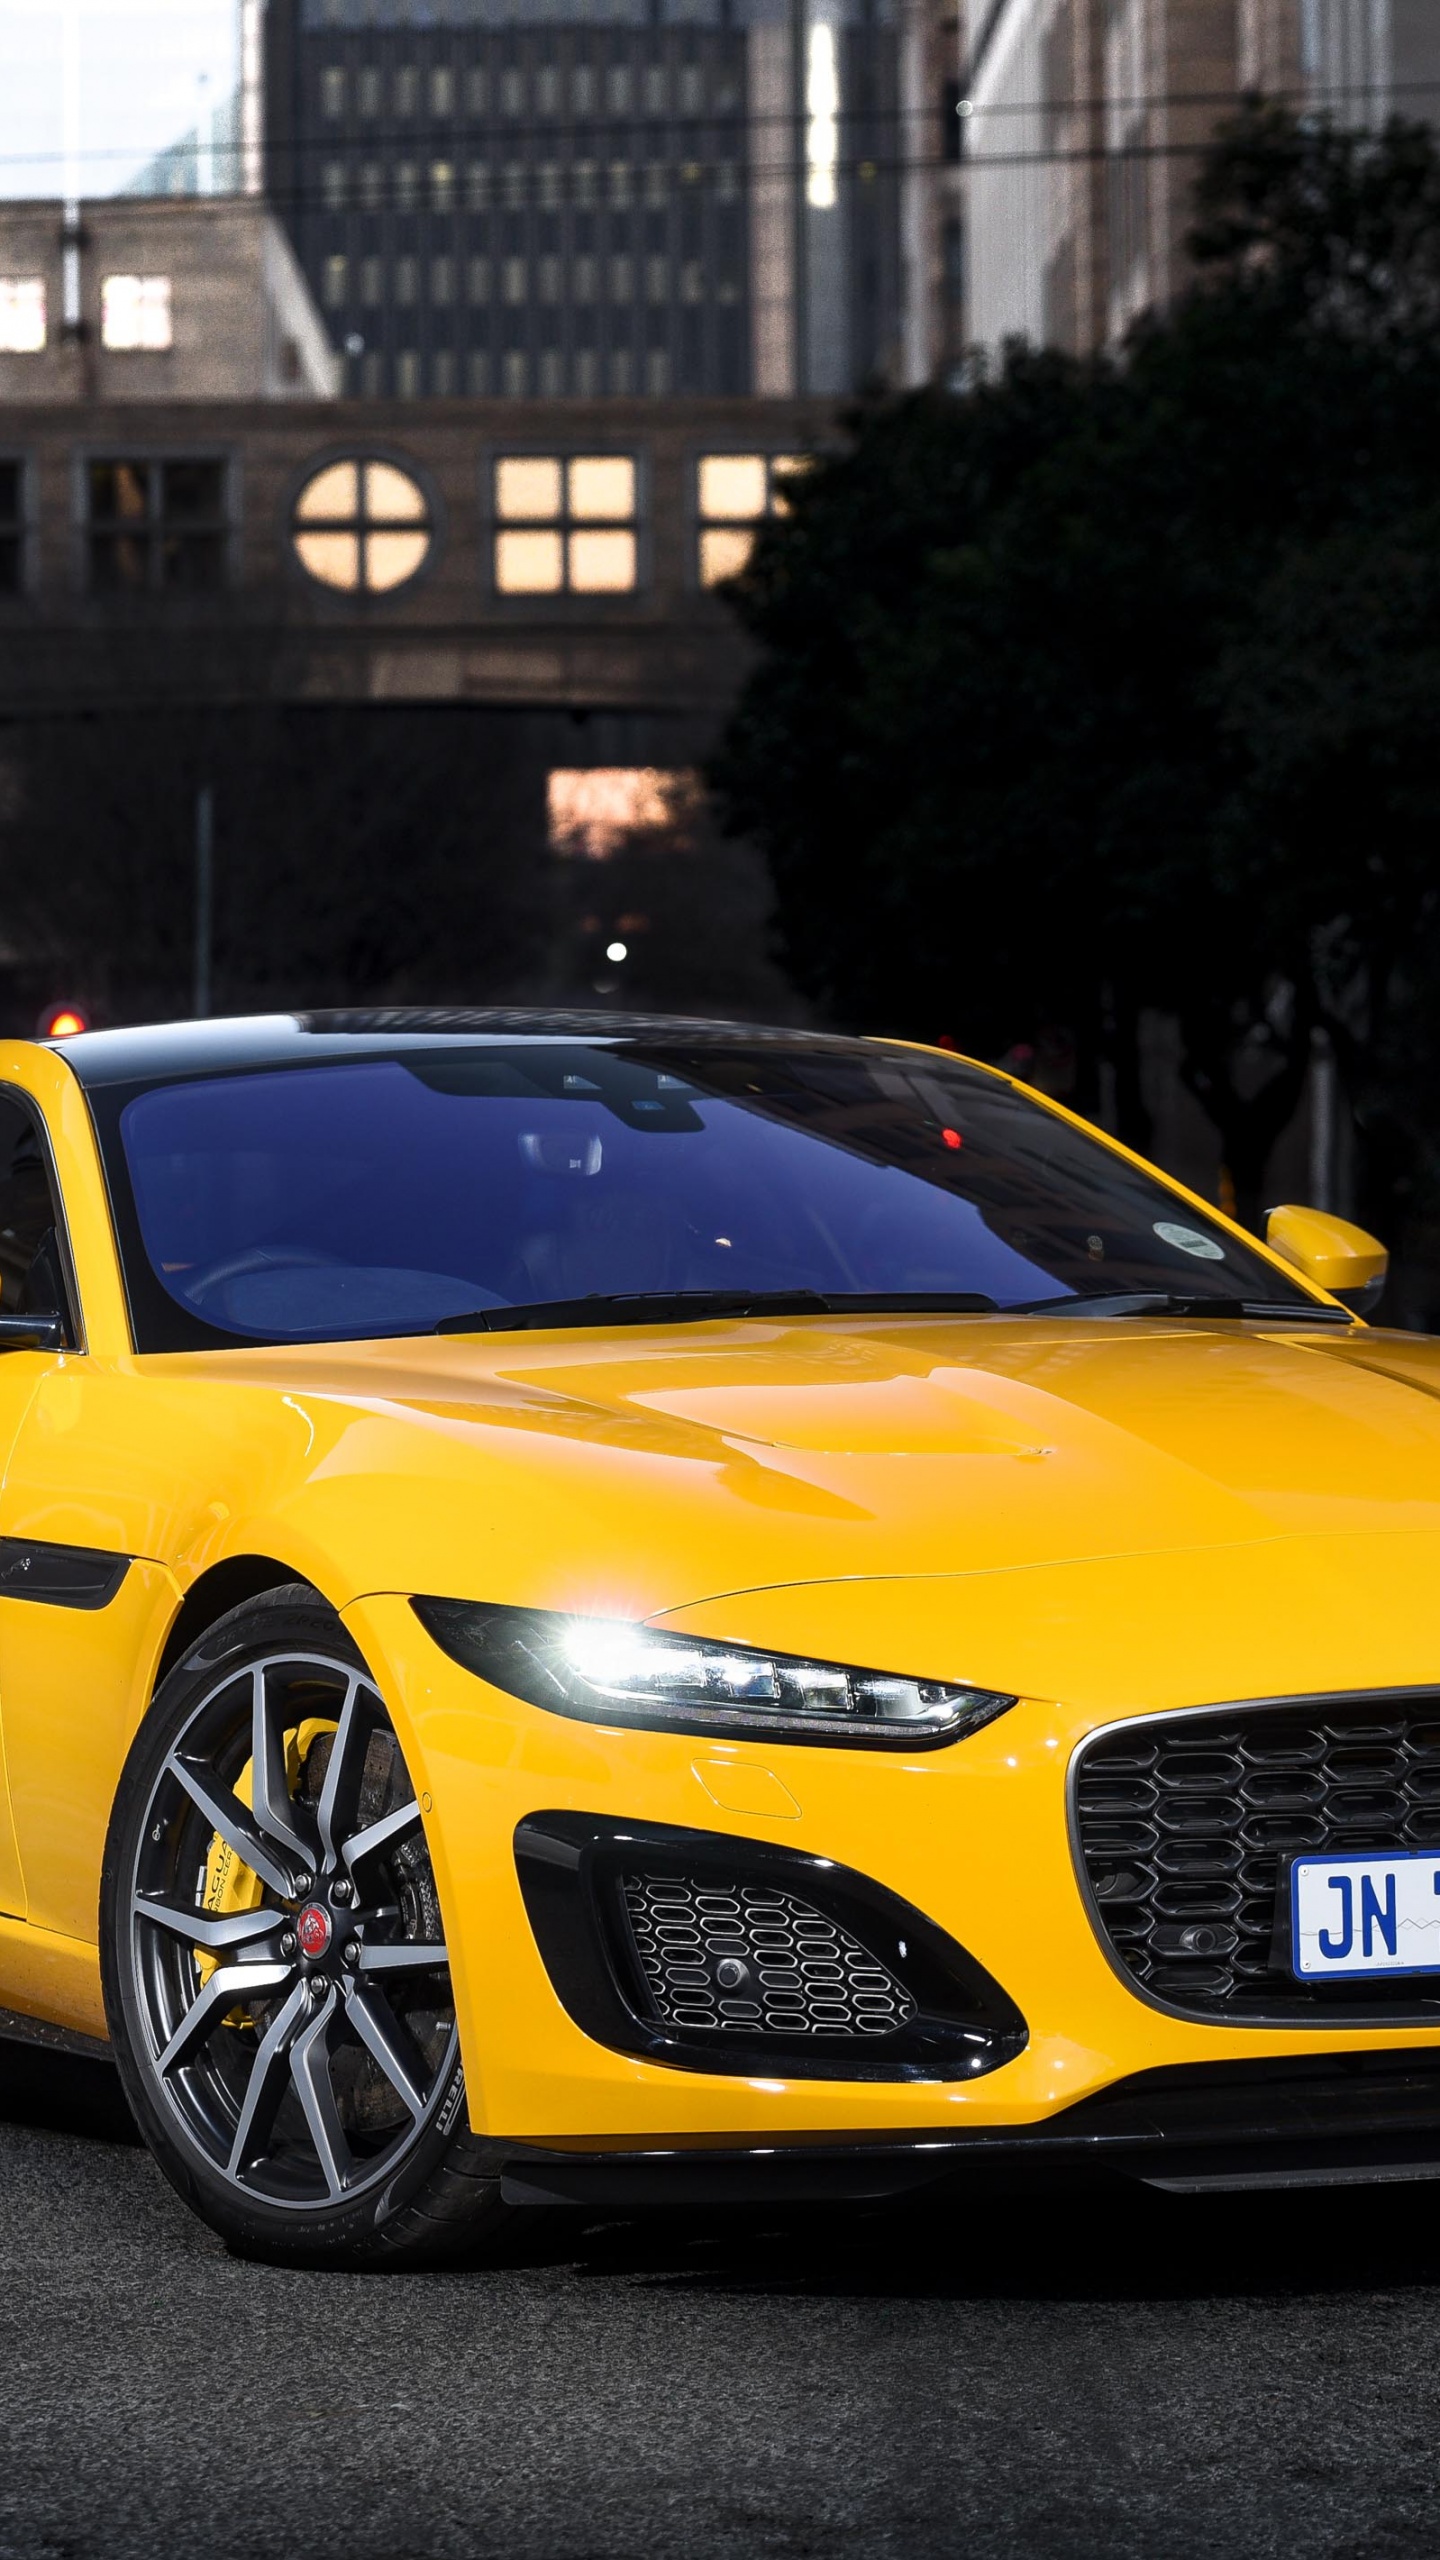 16,820 Jaguar Car Images, Stock Photos & Vectors | Shutterstock